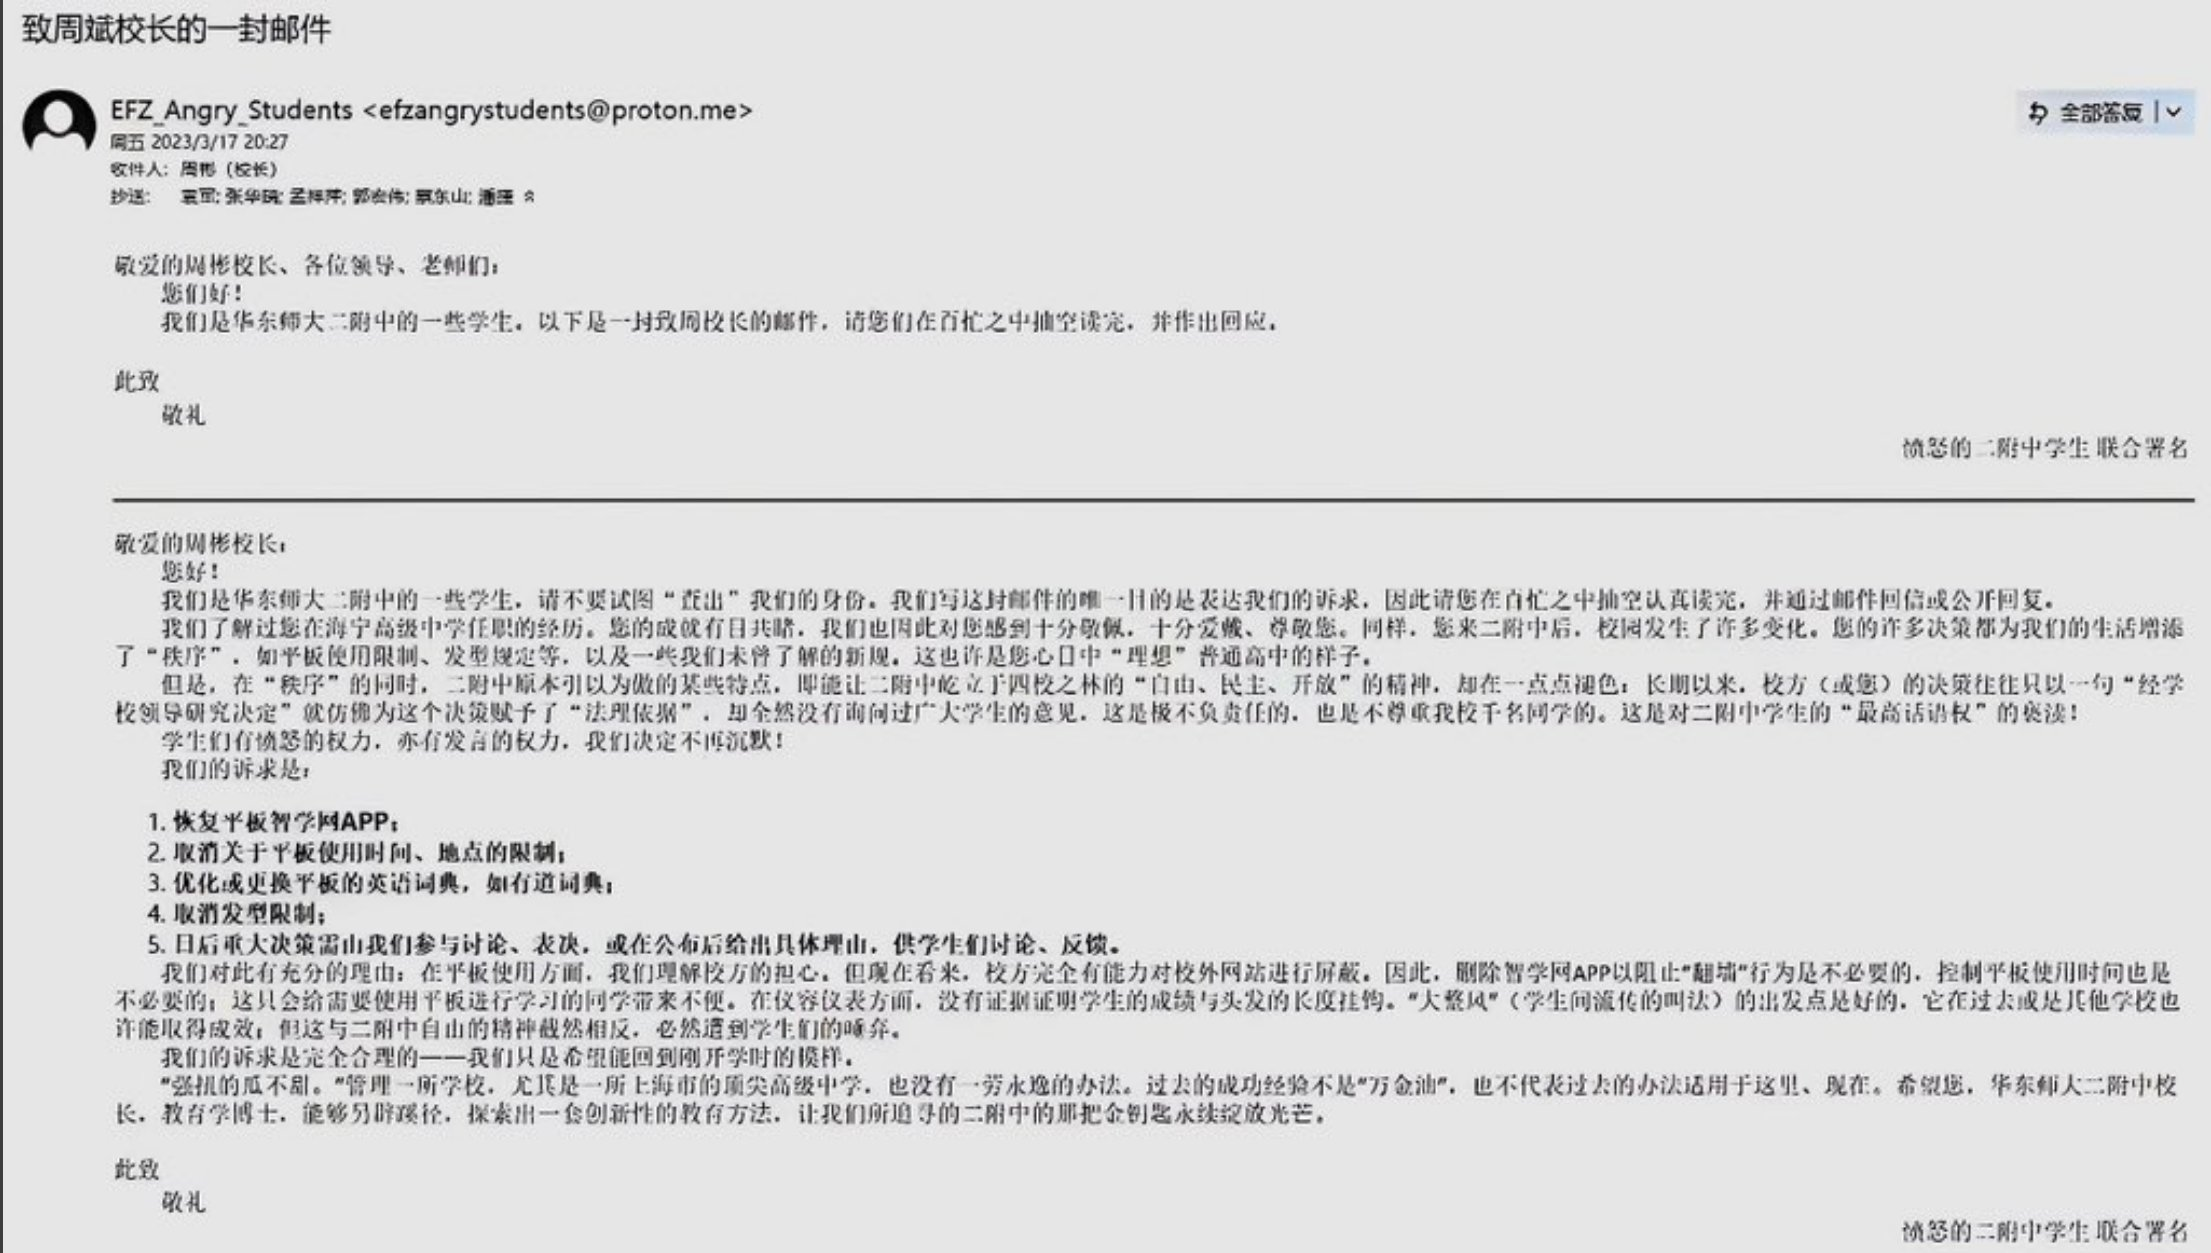 【立此存照】上海华东师范大学第二附中学生致周彬校长的公开信